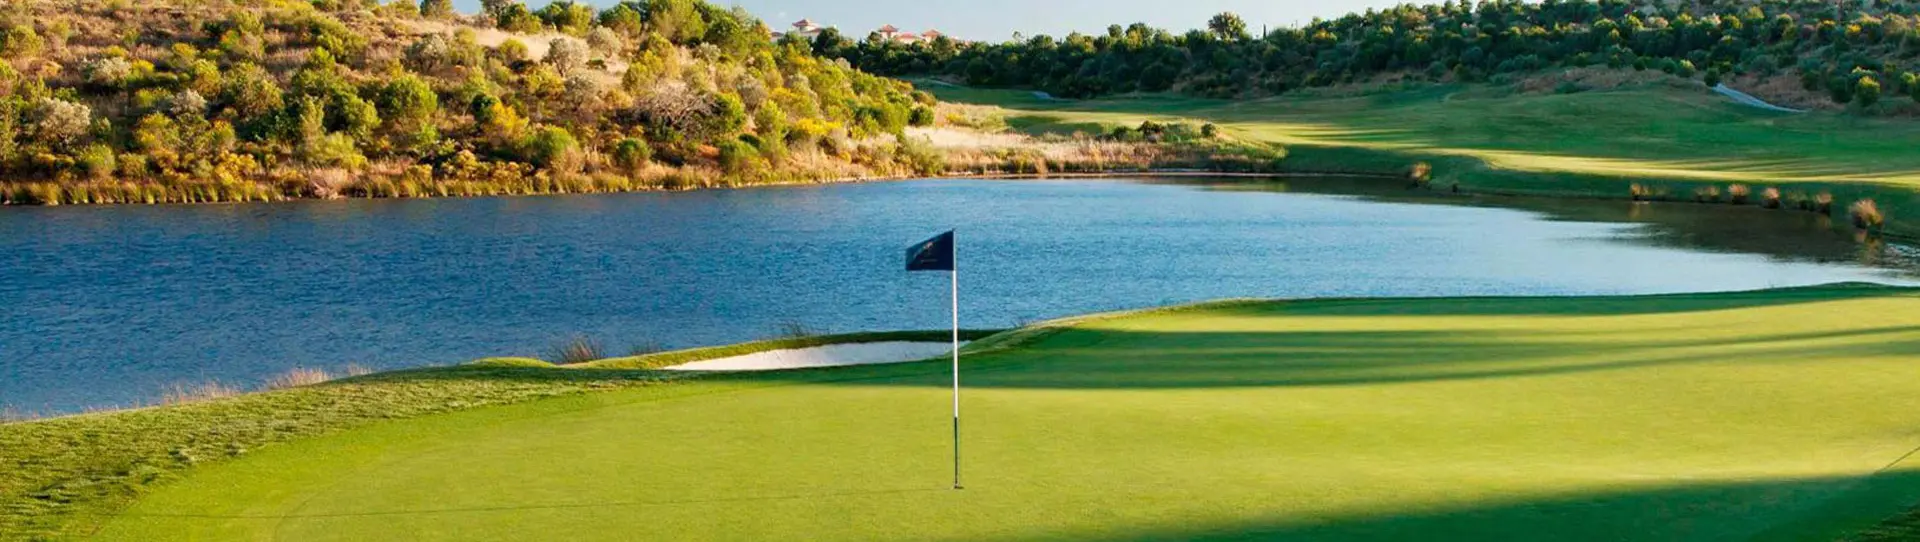 Portugal Golf Driving Range - Morgado do Reguengo Golf Academy - Photo 1